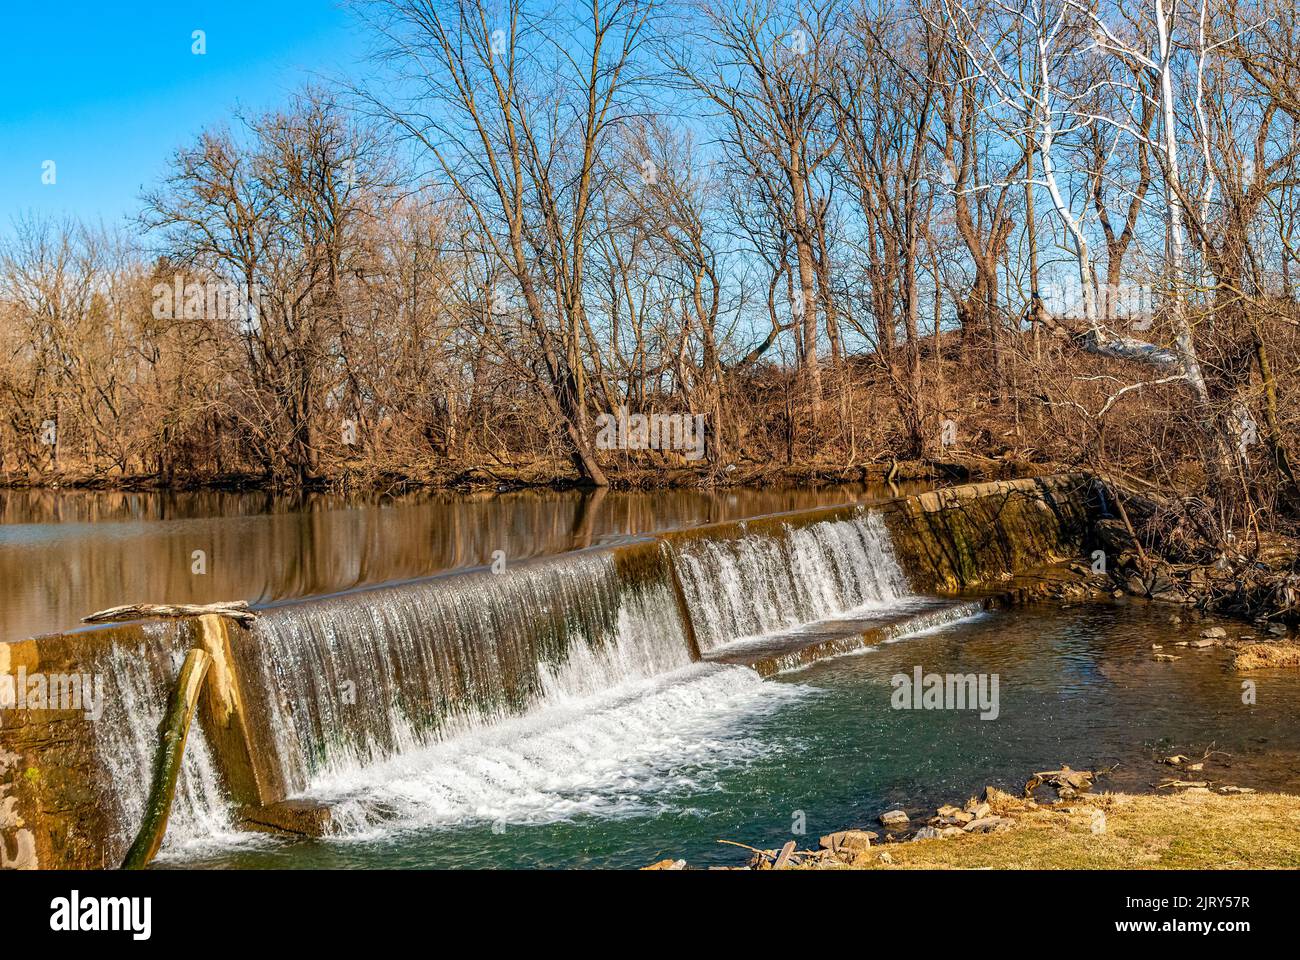 Ein Blick auf einen von Menschen gemachten Damm und Wasserfall, der an einem sonnigen Wintertag auf dem Land gefunden wurde Stockfoto